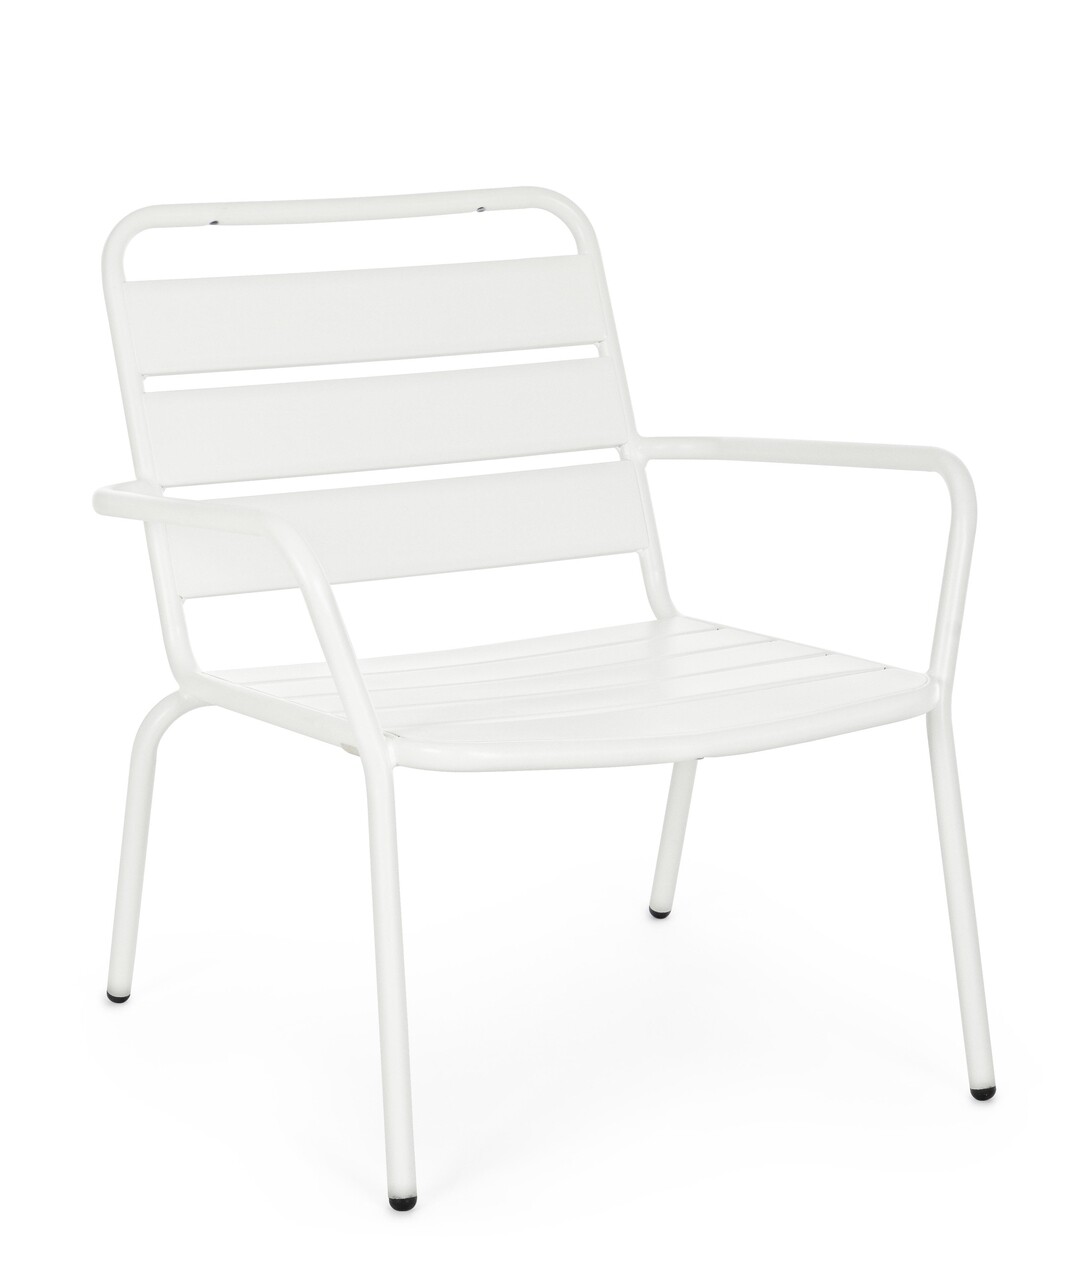 Marlyn Kerti szék, Bizzotto, 65 x 74 x 71 cm, acél, matta felület, fehér